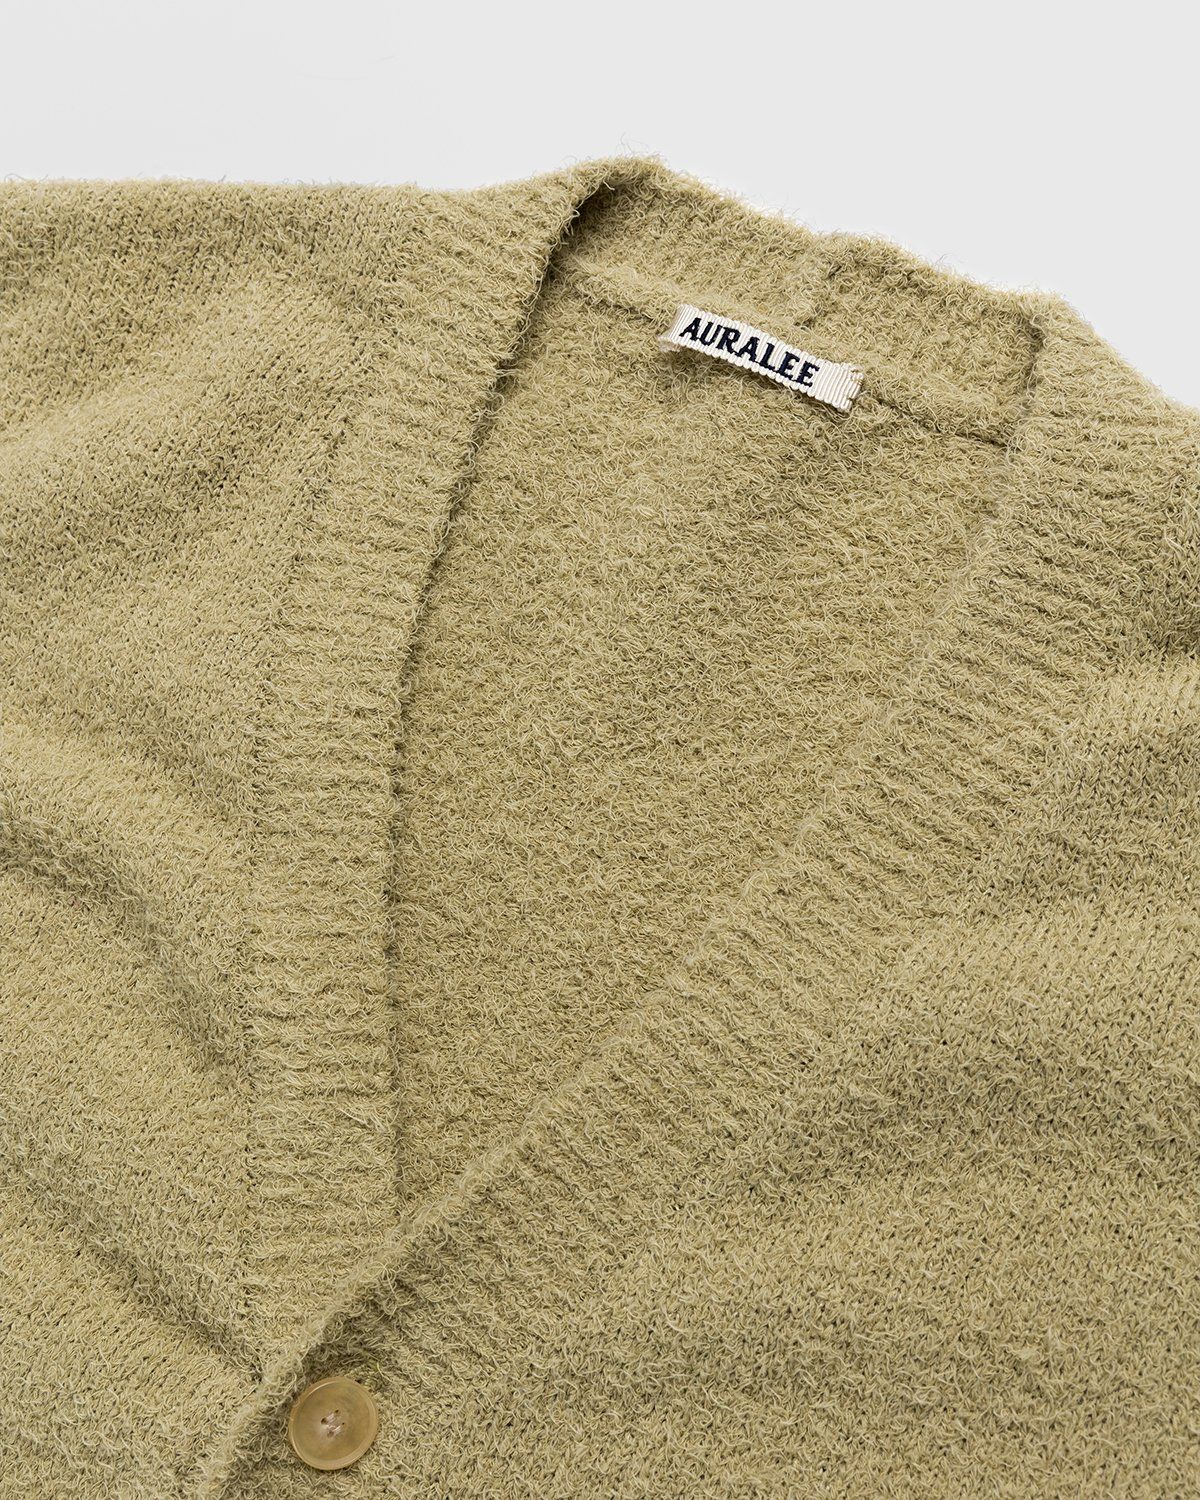 Auralee – Cotton Linen Shaggy Knit Cardigan Light Green - Knitwear - Green - Image 3